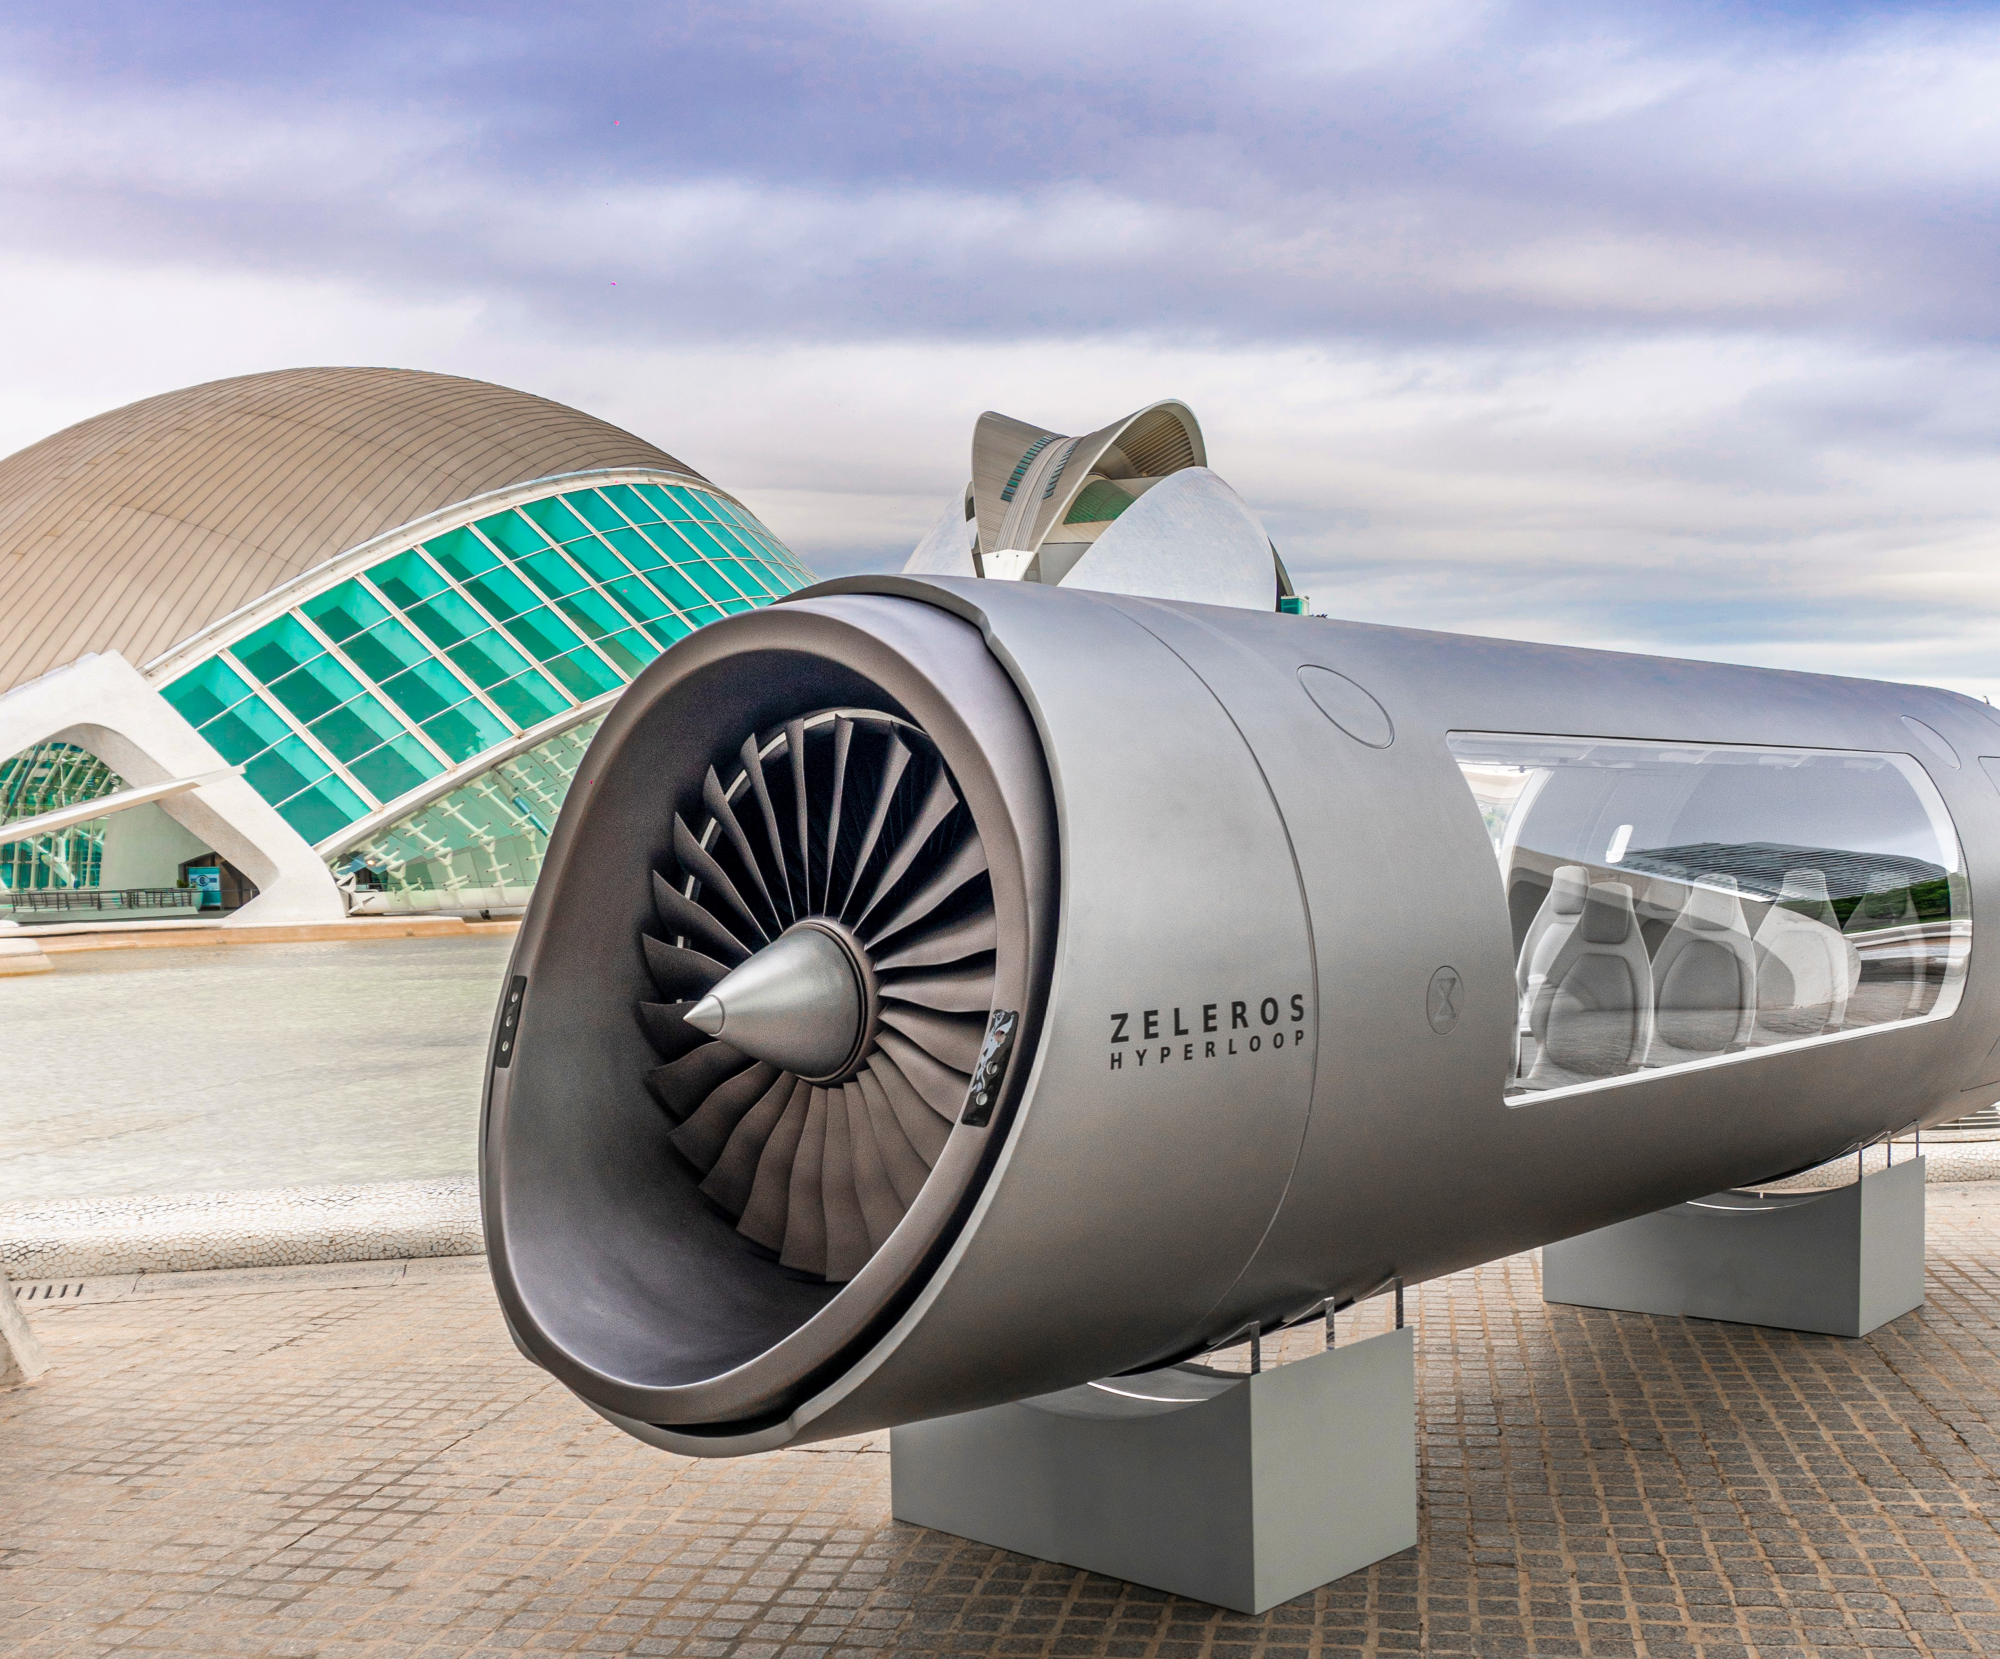 Zeleros quiere aprovechar las baterías del hyperloop en otros vehículos.